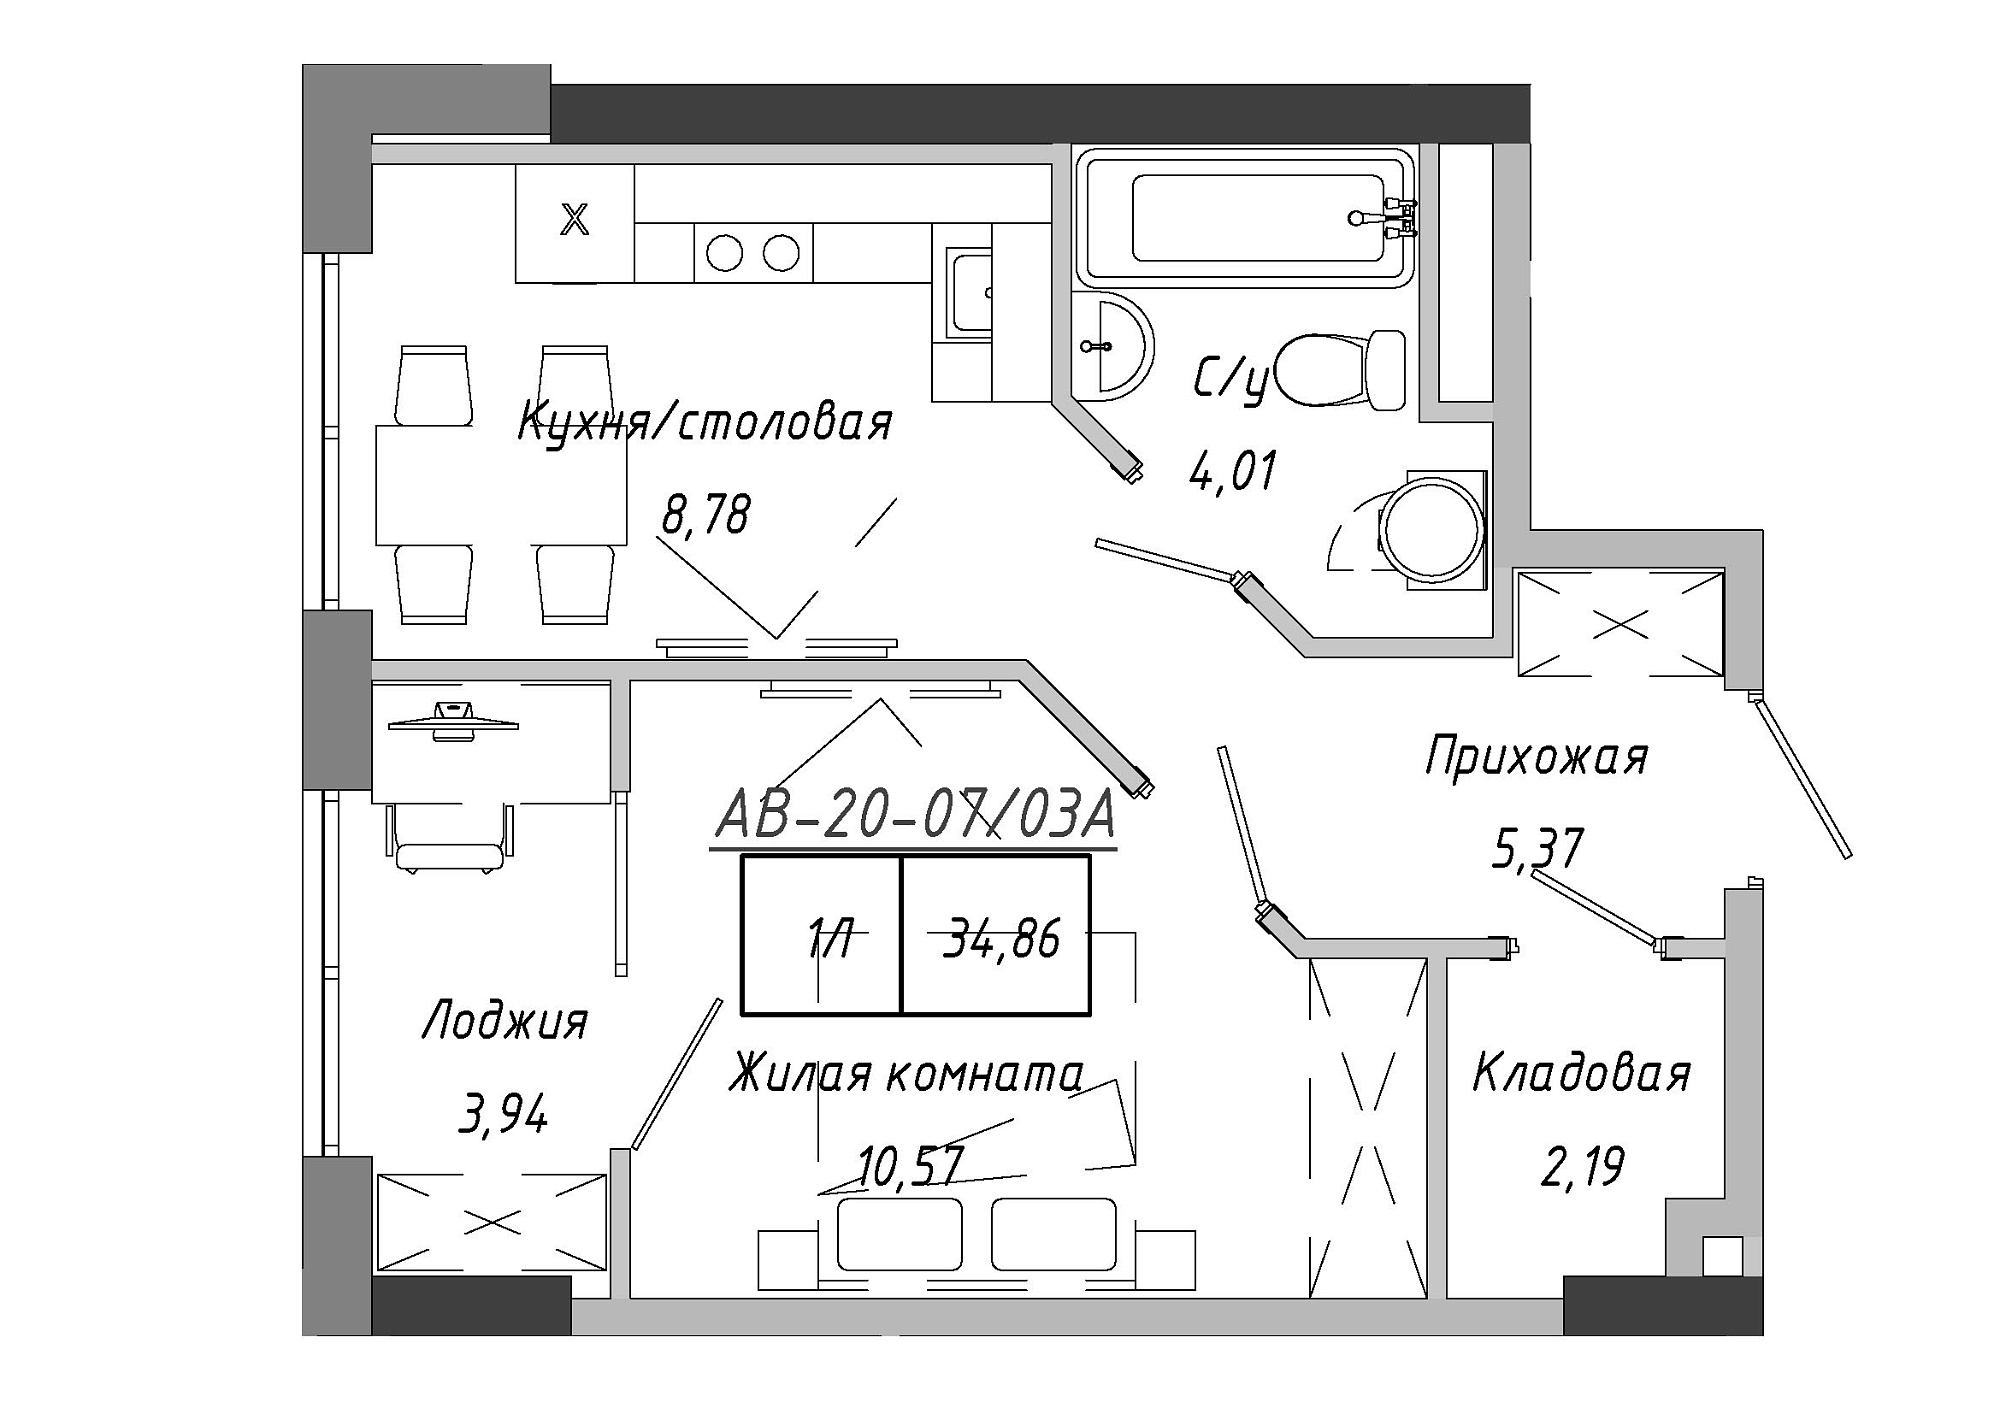 Планировка 1-к квартира площей 35.26м2, AB-20-07/0003а.